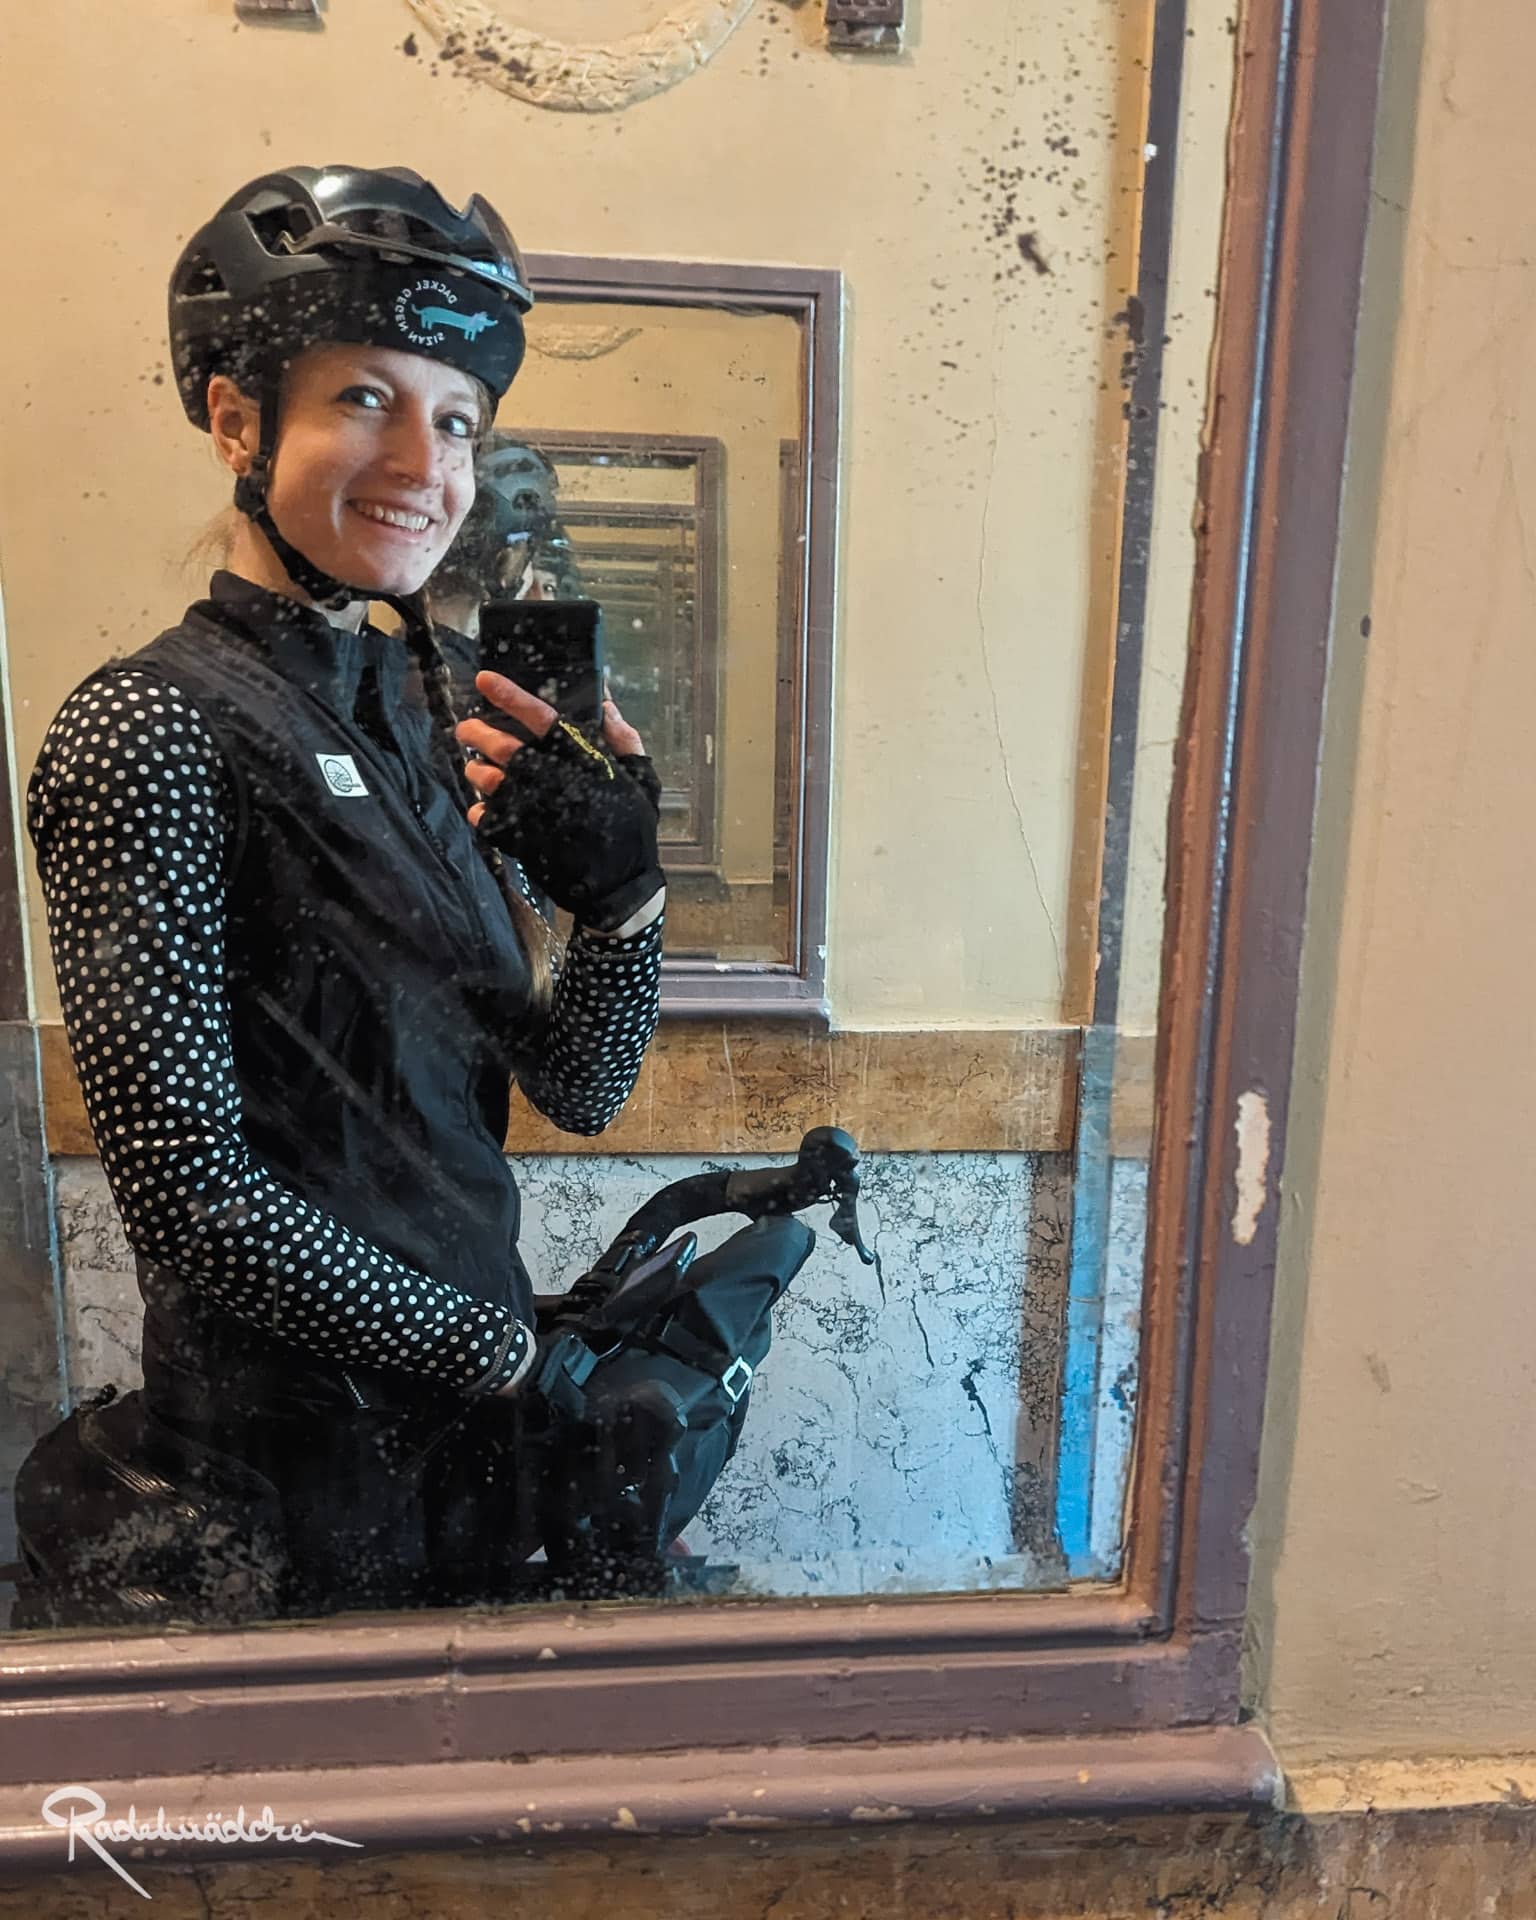 Frau mit Fahrradkleidung und Helm vor einem Spiegel